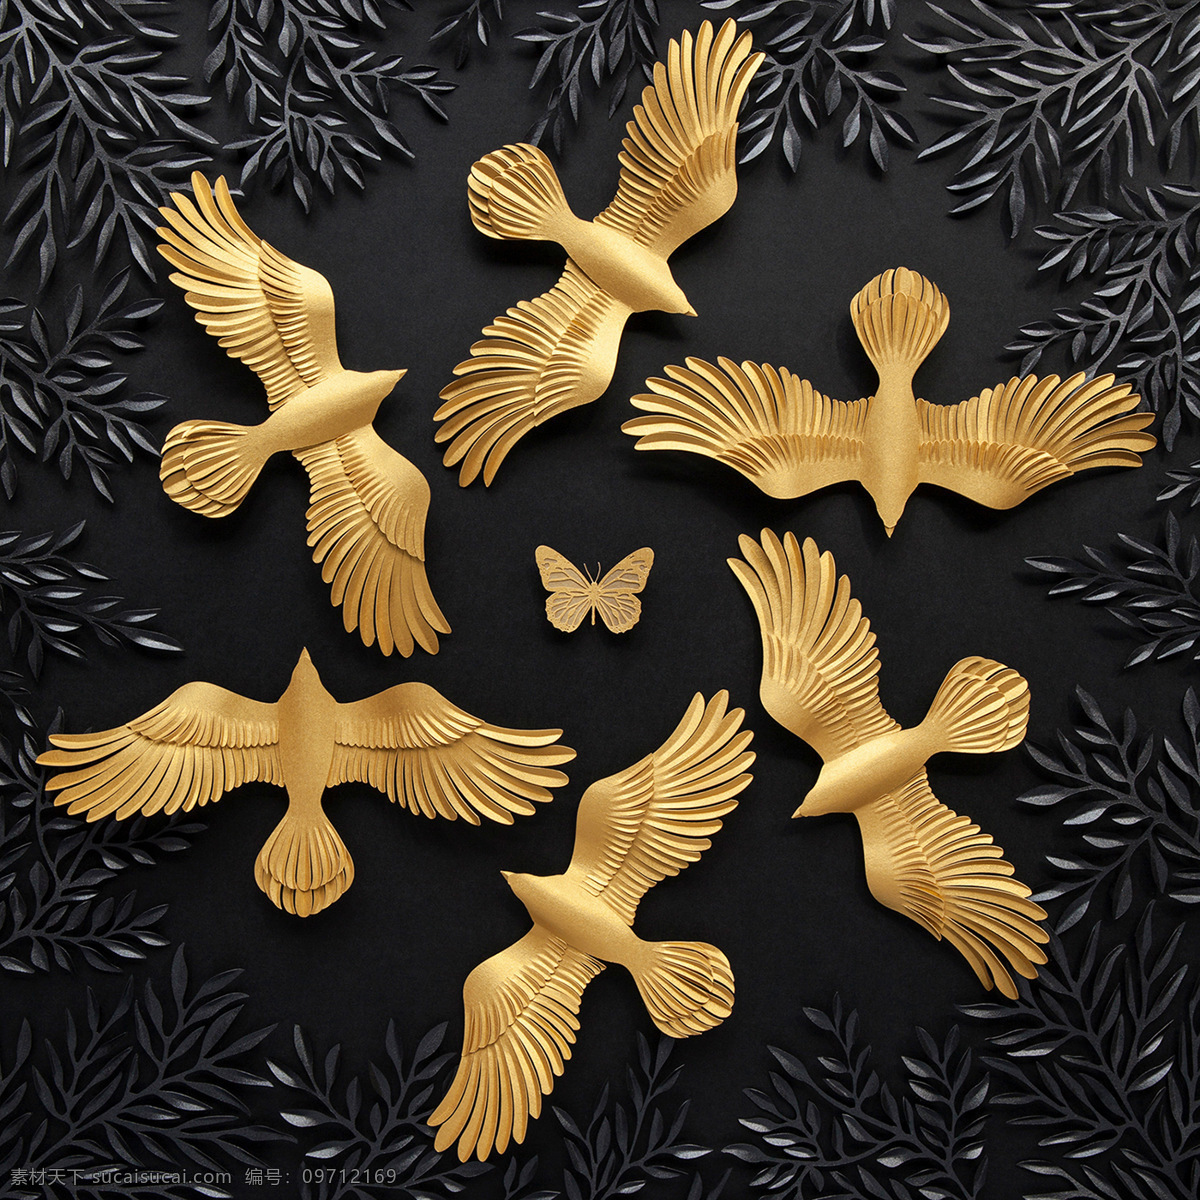 金色素材 金色背景 黑色背景 金色鸟 金色蝴蝶 立体感 3d设计 展示模型